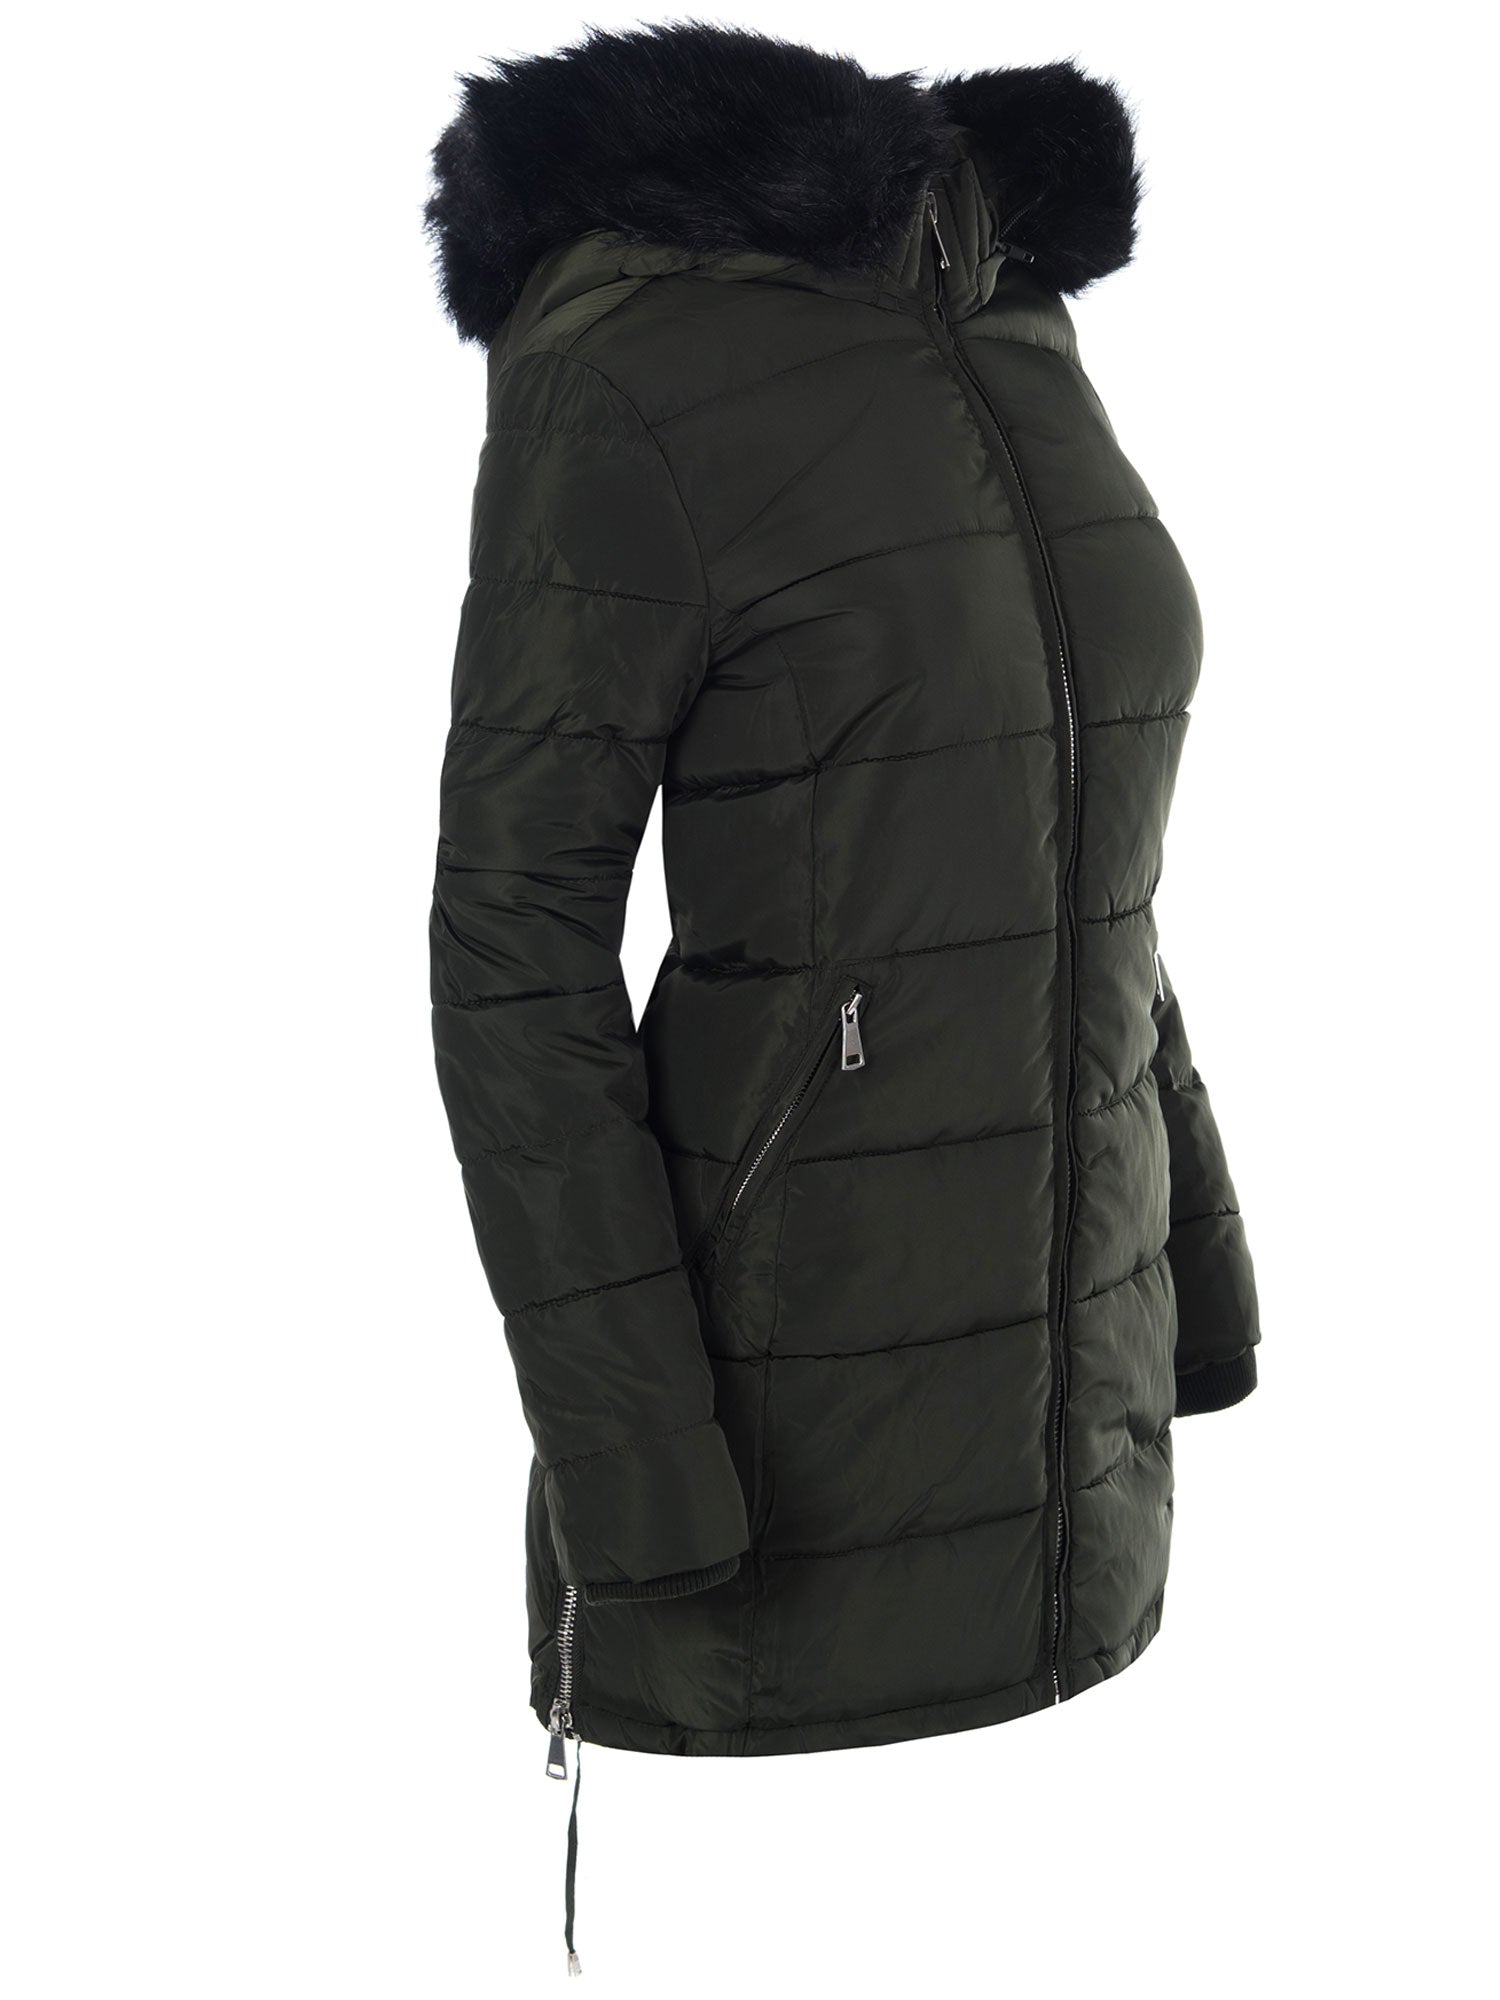 Piumino giaccone invernale nero 9040 - taglia S